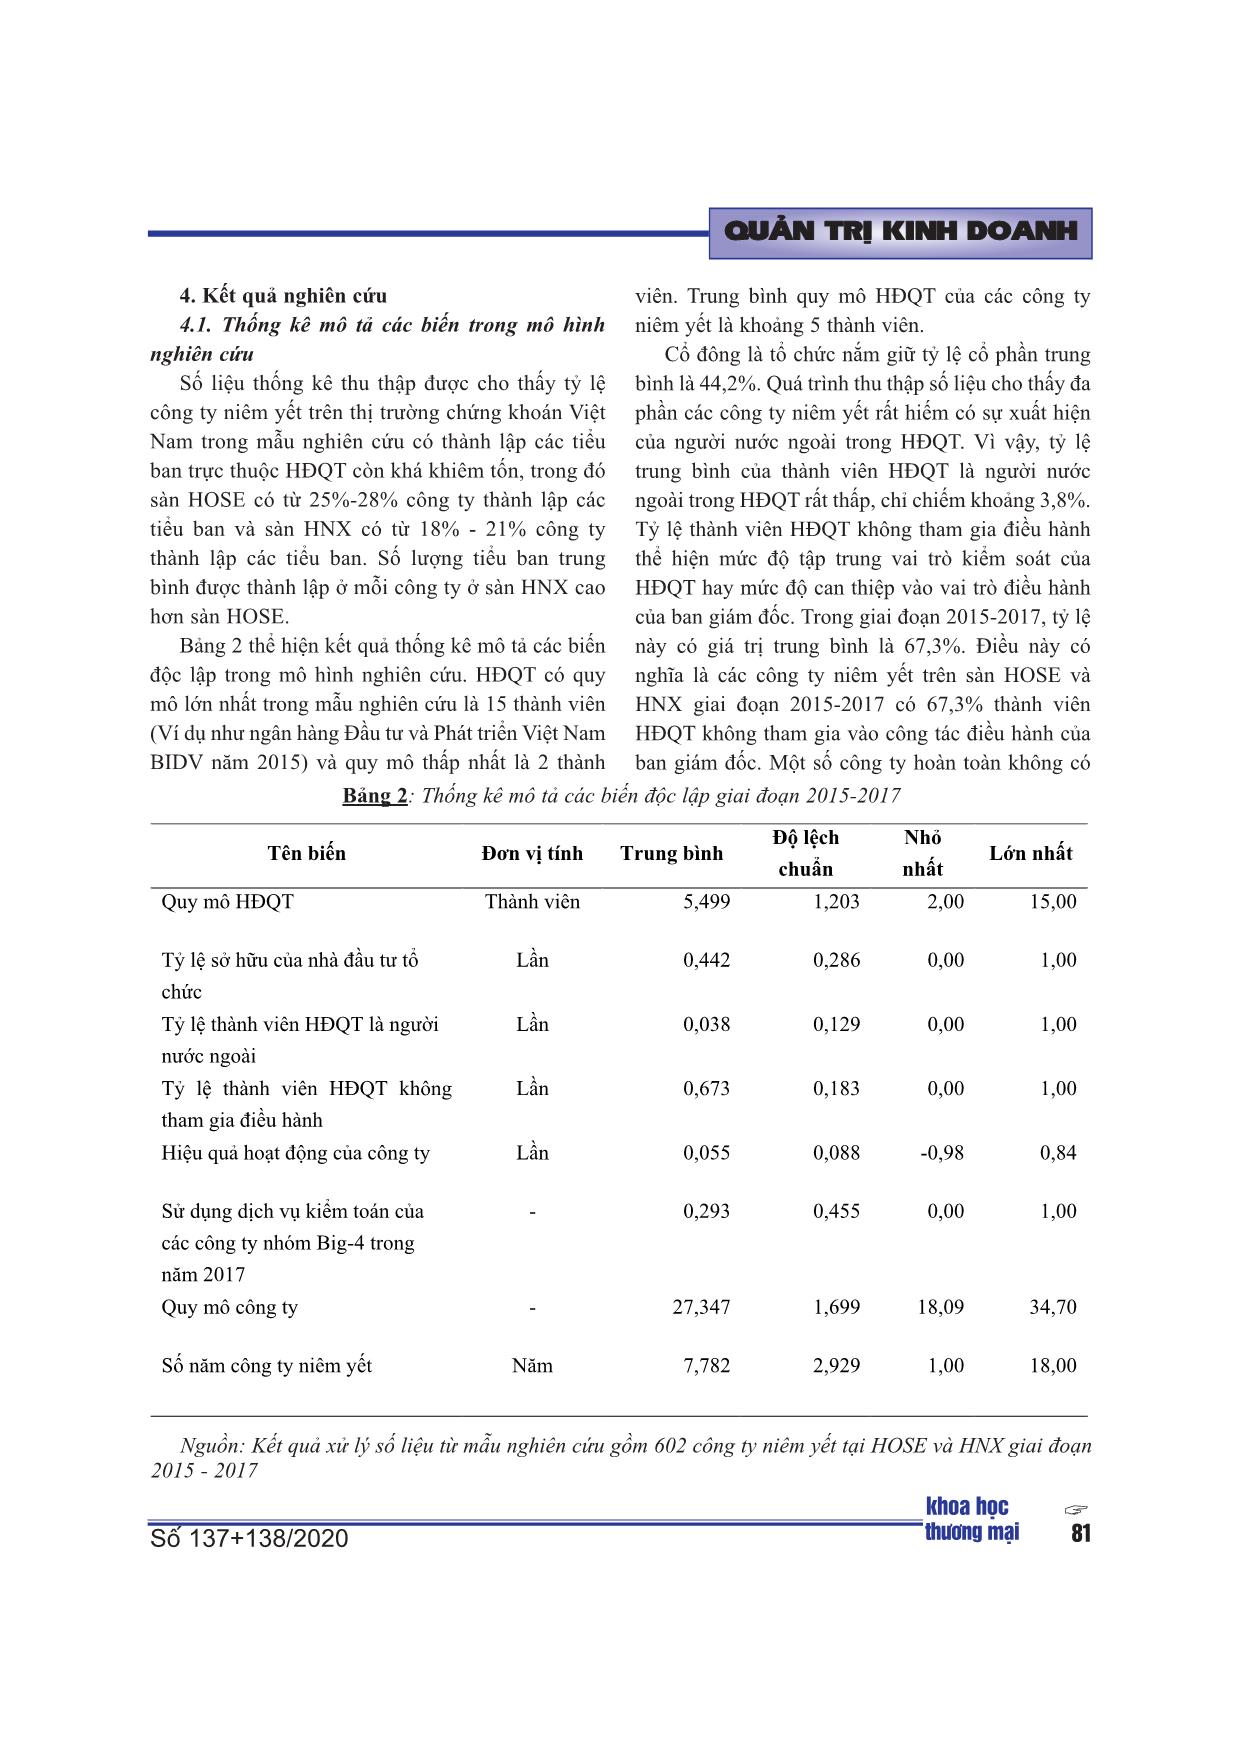 Các nhân tố ảnh hưởng đến khả năng thành lập các tiểu ban trực thuộc hội đồng quản trị của các công ty niêm yết trên thị trường chứng khoán Việt Nam trang 9